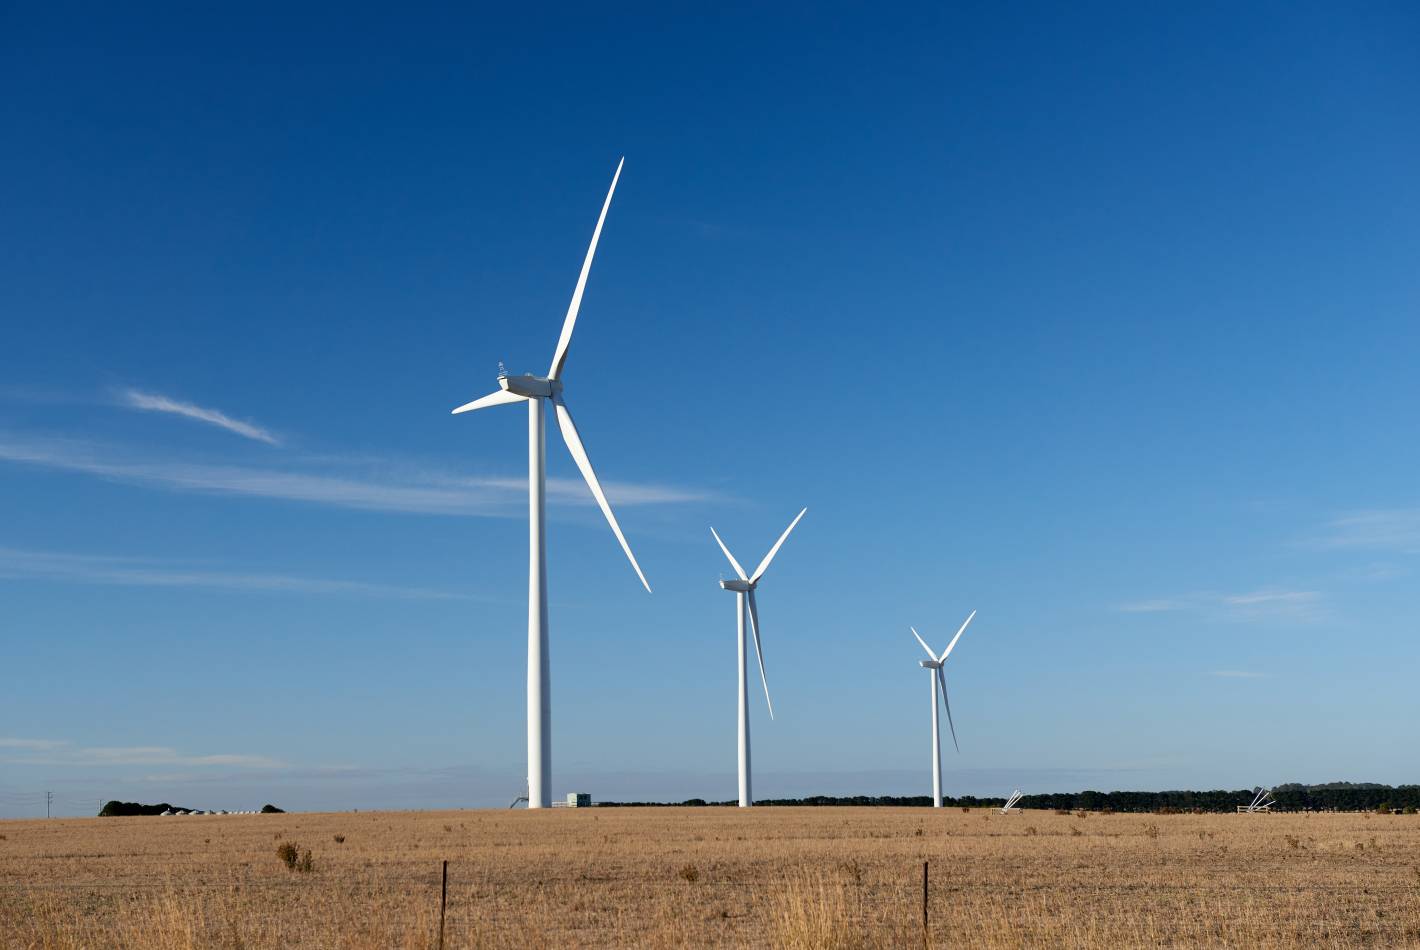 Ararat Wind Farm